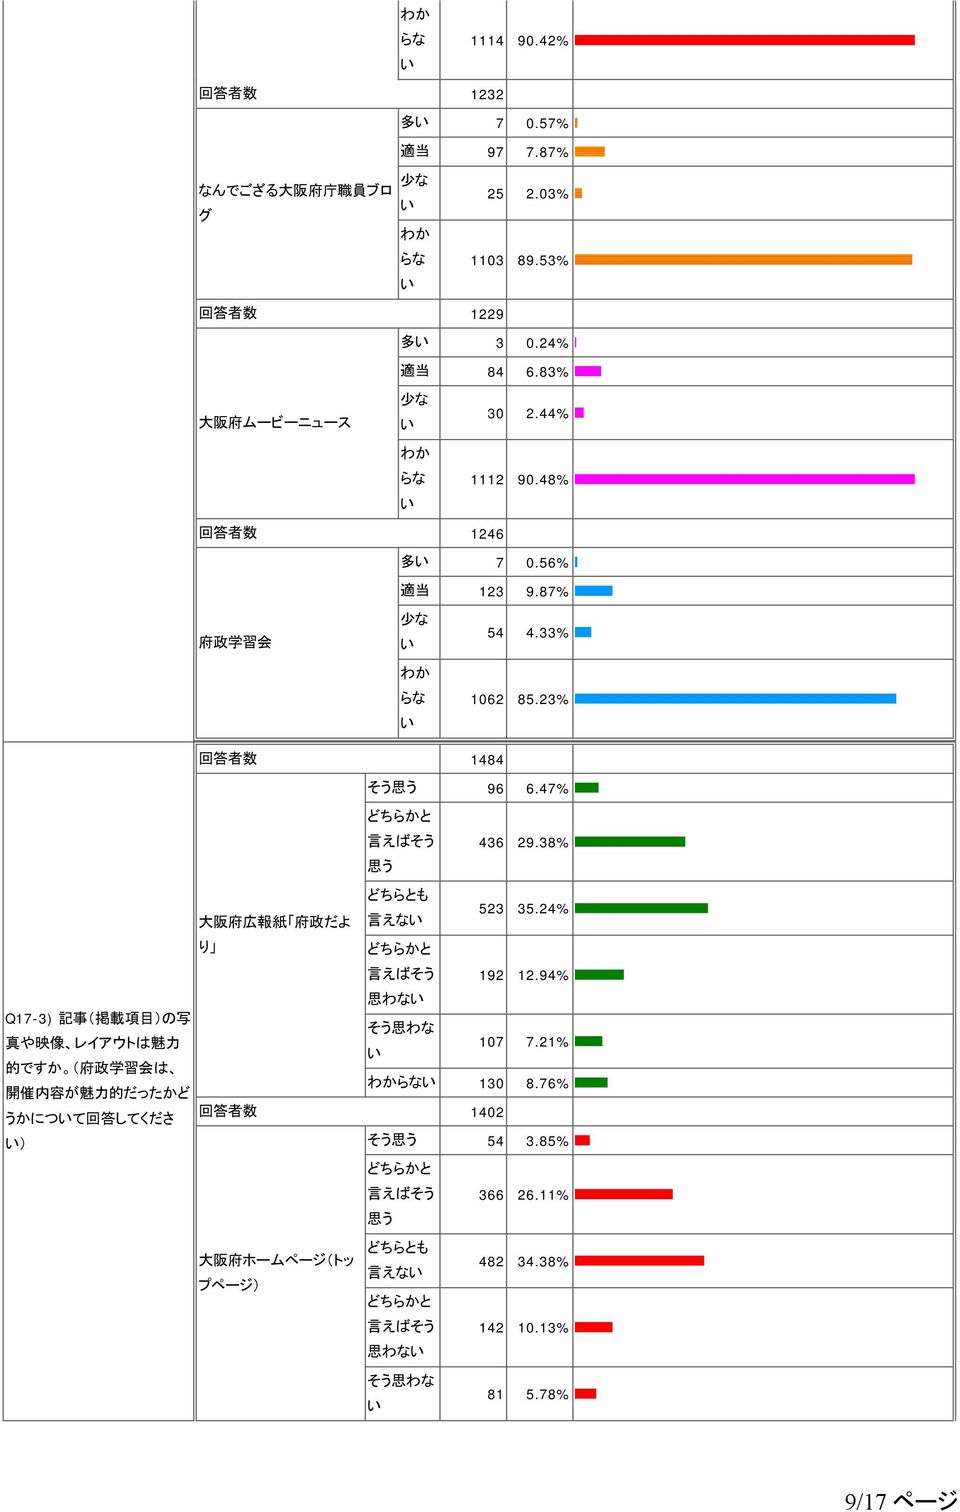 47% 436 29.38% 大 阪 府 広 報 紙 府 政 だよ 言 えな 523 35.24% り 192 12.94% 思 わな Q17-3) 記 事 ( 掲 載 項 目 )の 写 真 や 映 像 レイアウトは 魅 力 107 7.